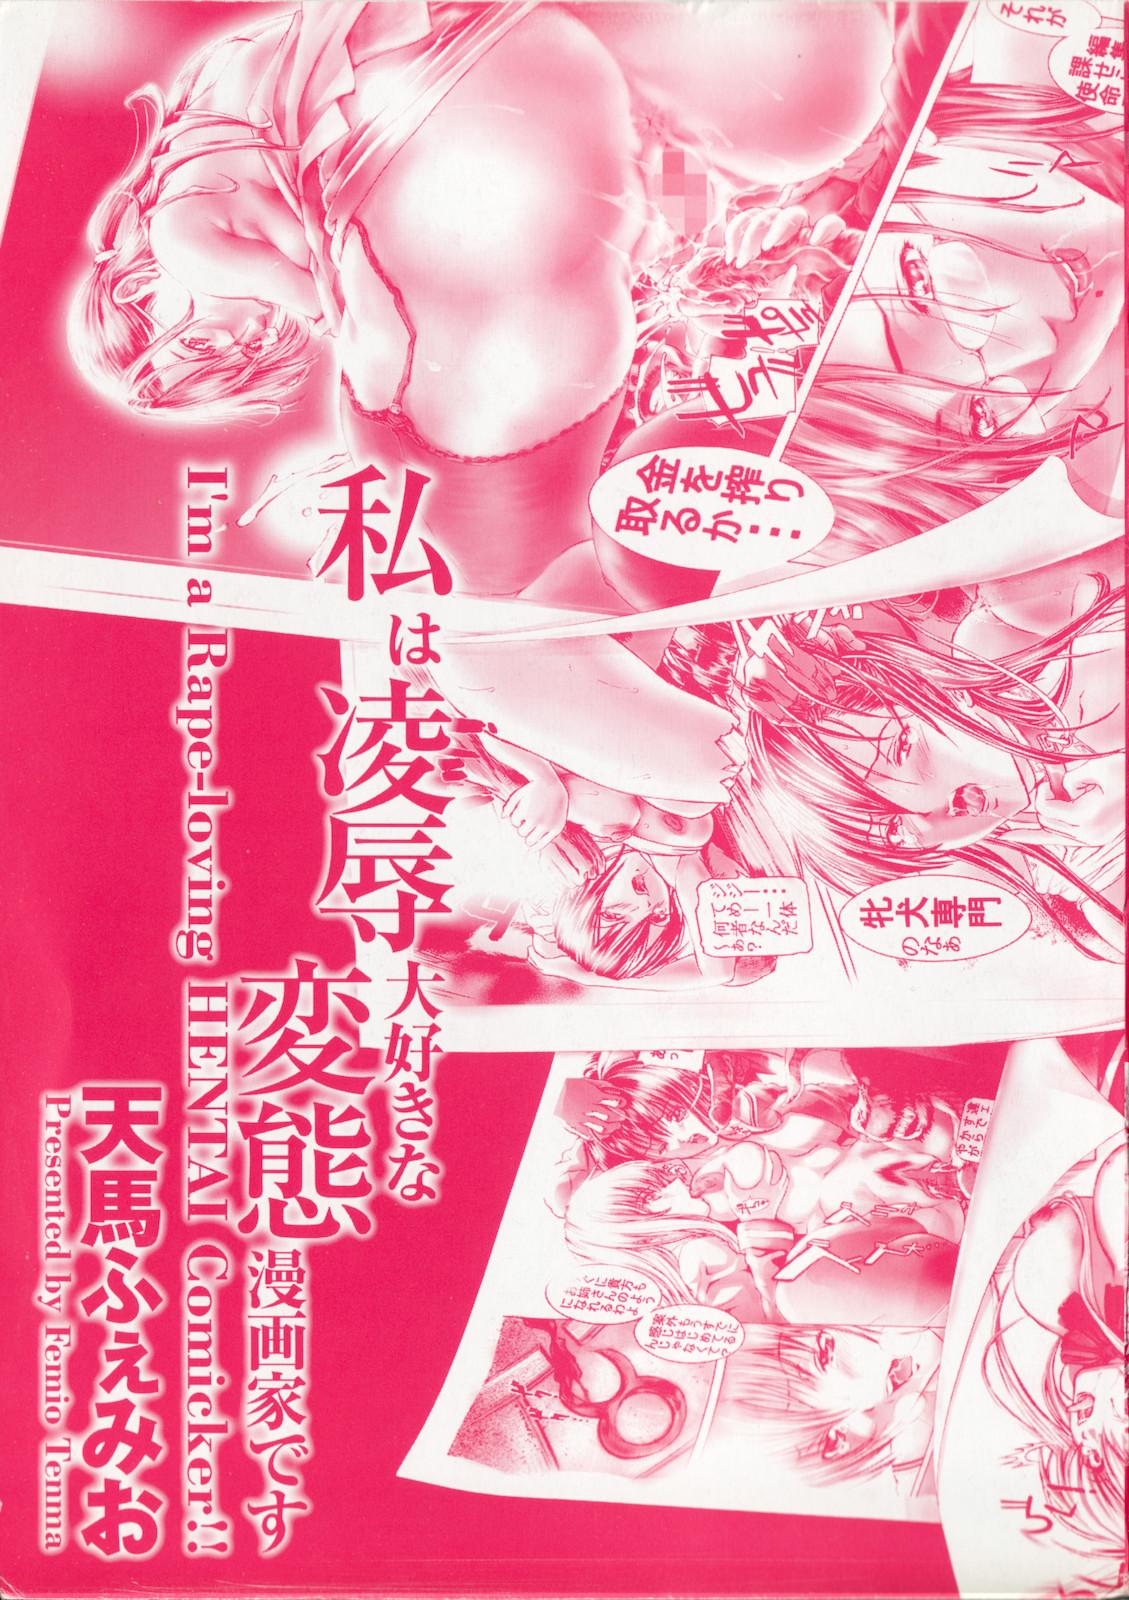 Watashi wa ryoujyoku daisuki na henatai mangaka desu 2